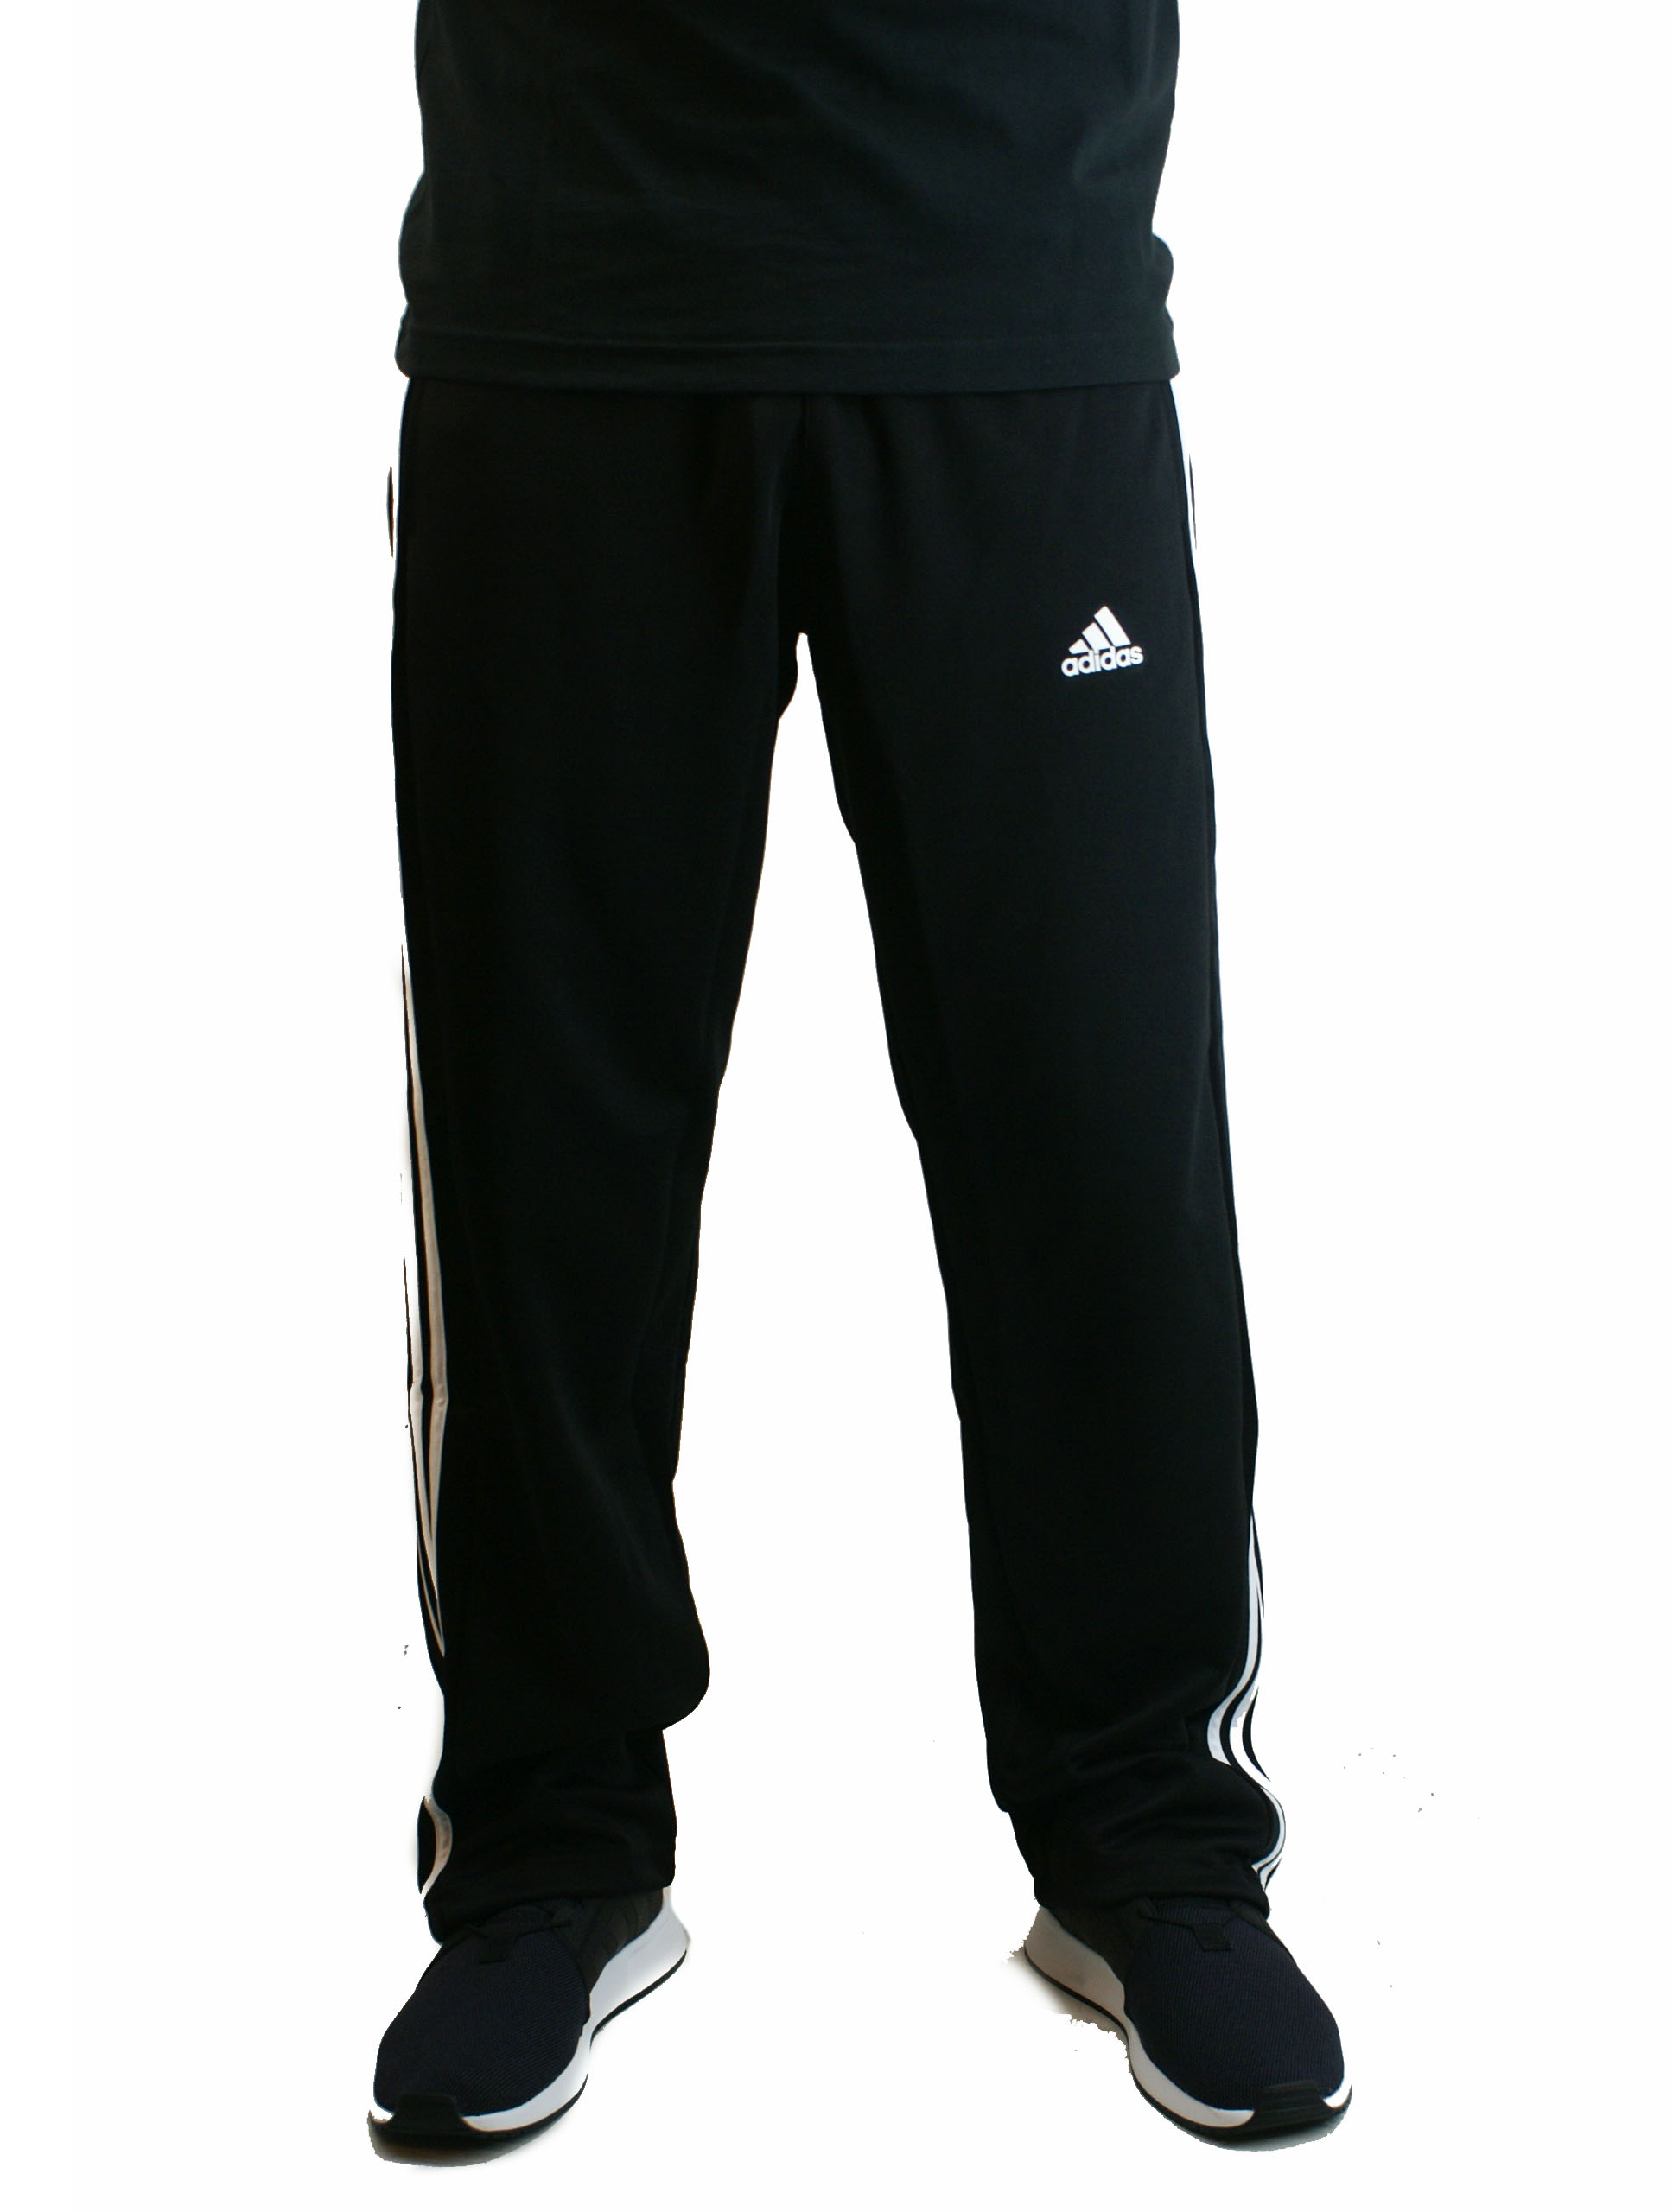 Pantalon Adidas Algodon 3 tiras Negro/Bco Hombre Deporfan - Indumentaria -  Hombres - E-Shop